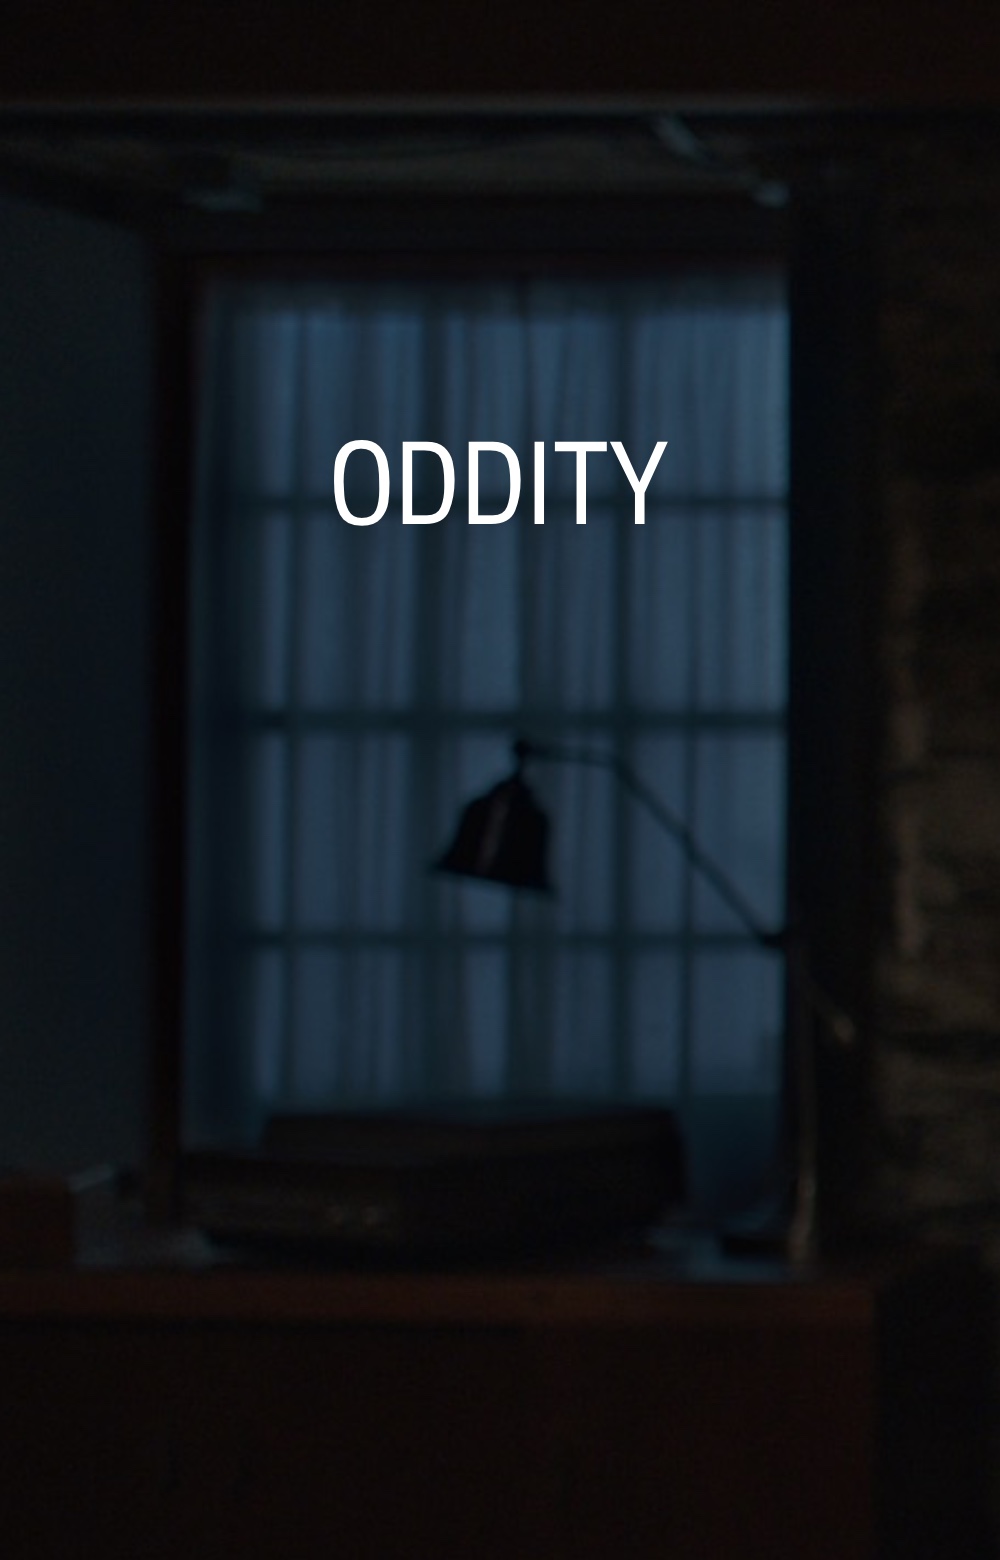 Oddity